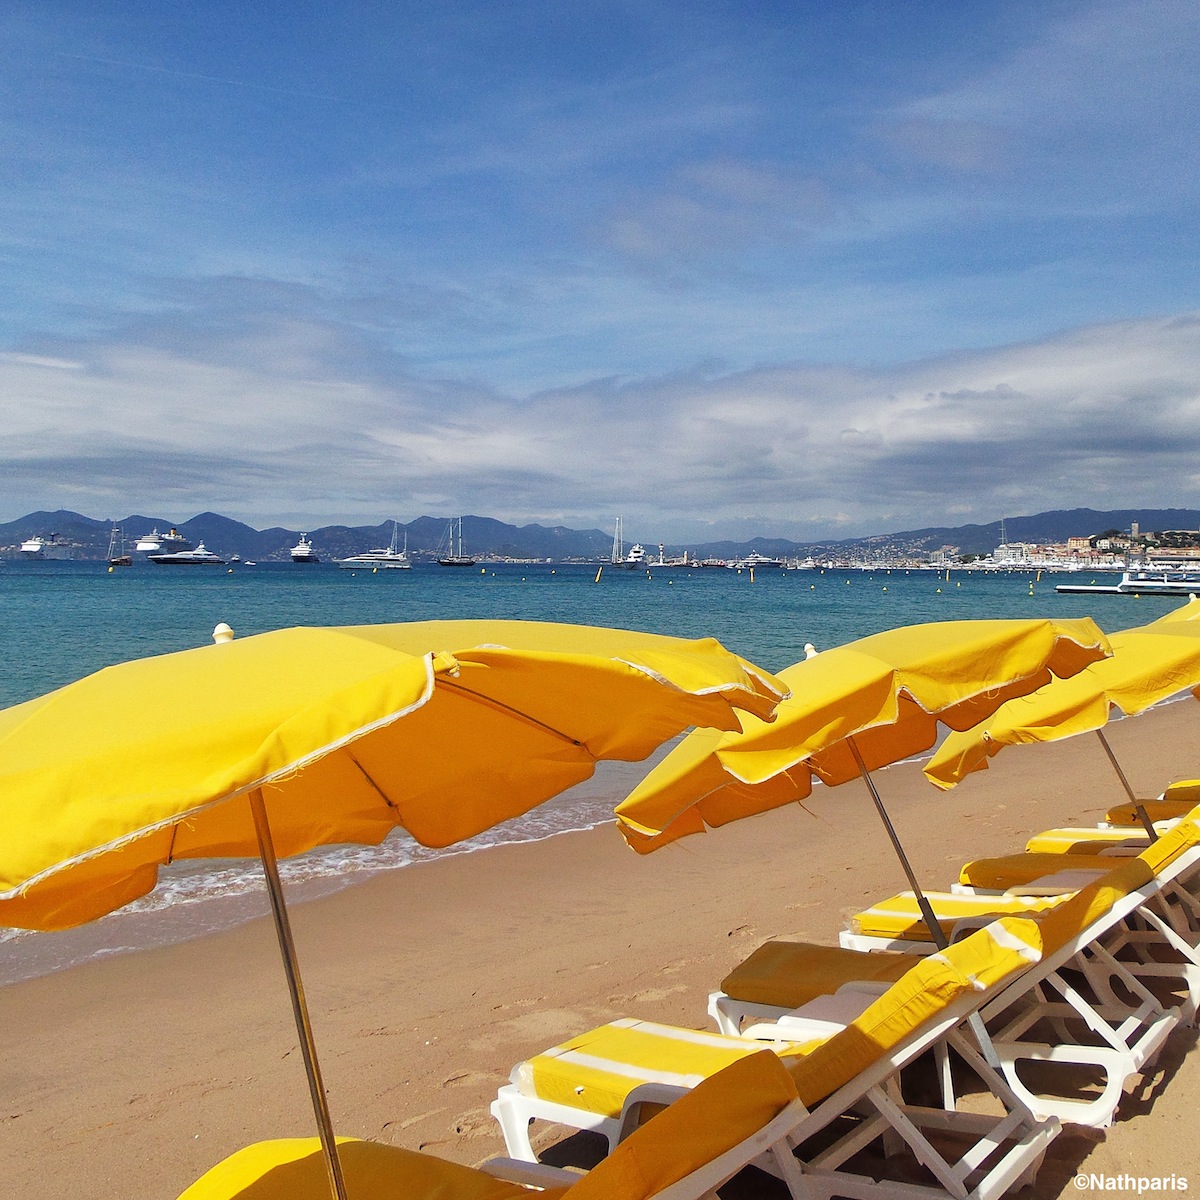 Les fameux transats de Cannes sous un soleil radieux...– Samsung Galaxy S4 Zoom
Nathalie Geffroy